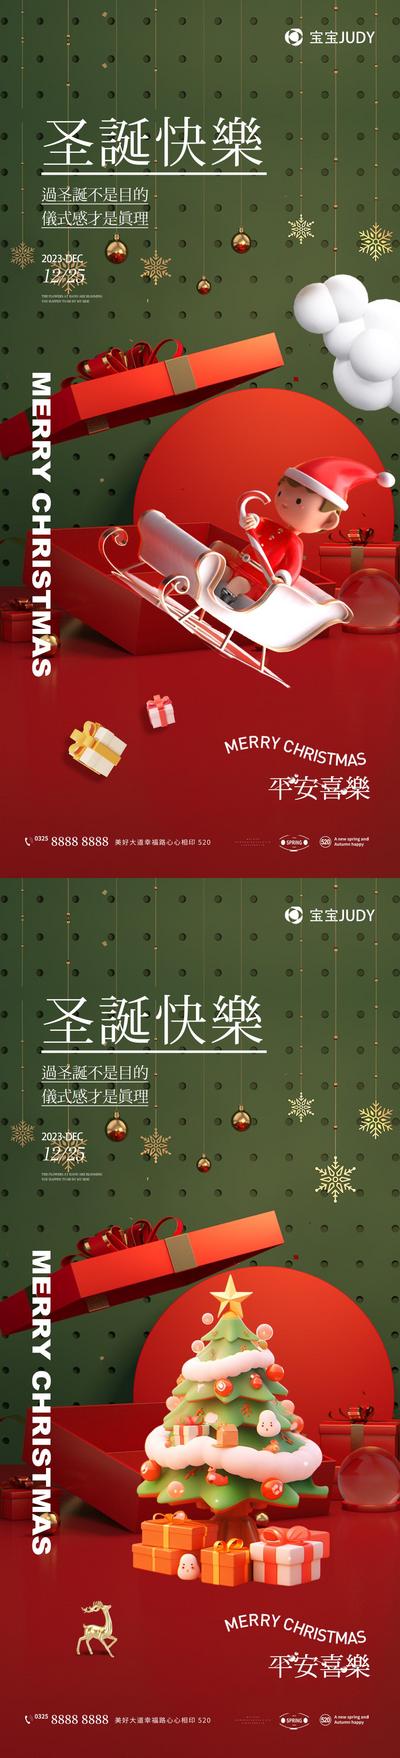 南门网 广告 海报 节日 圣诞节 高端 国潮 创意 西方节日 平安夜 圣诞树 唯美 光效 微信稿 高级灰 大气